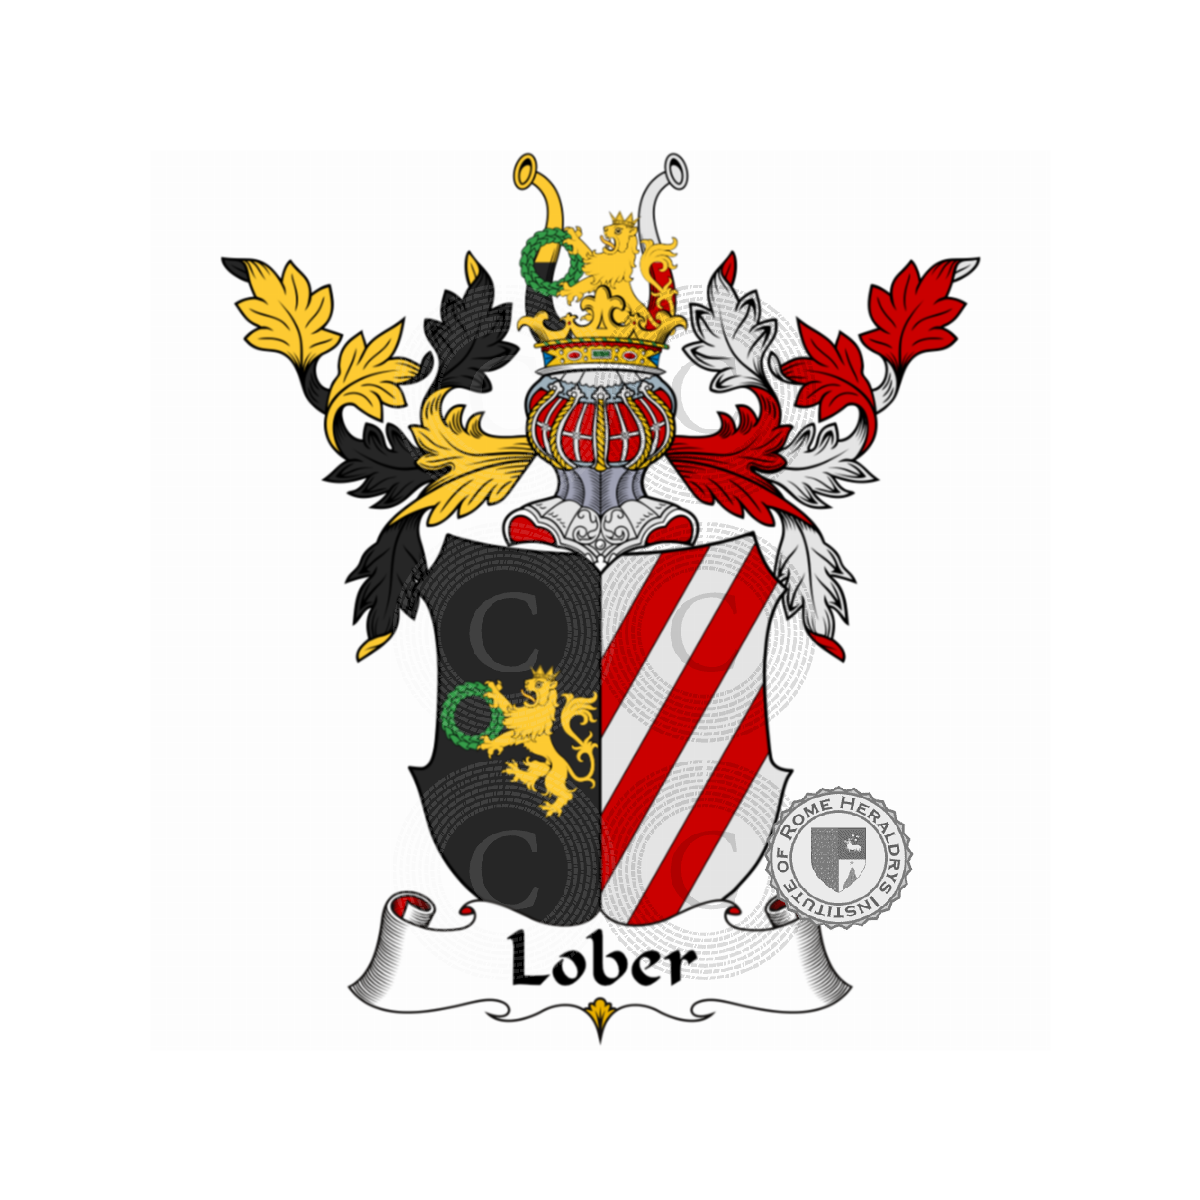 Brasão da famíliaLober, Löber,Lower